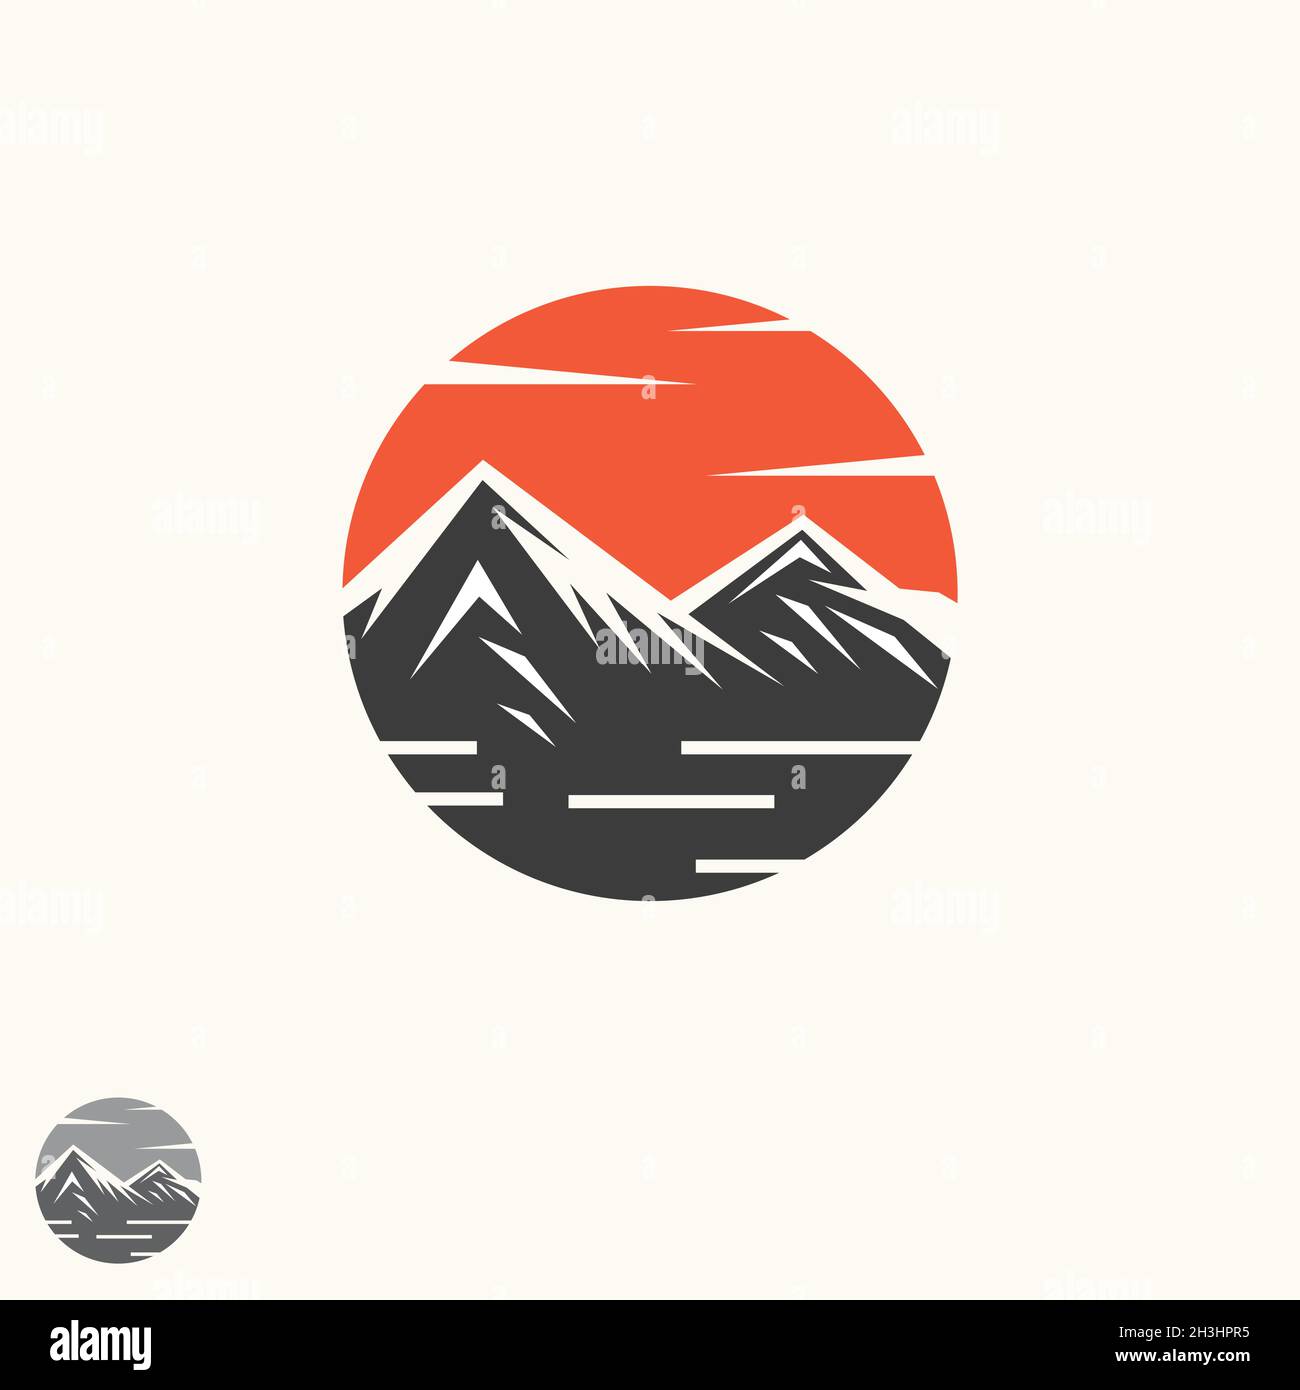 Abstrakte Vektorgrafik Landschaft Natur oder Outdoor-Blick auf die Berge Silhouette. Berge und Reisesymbole für Tourismusorganisationen oder Outdoor-Veranstaltungen Stock Vektor